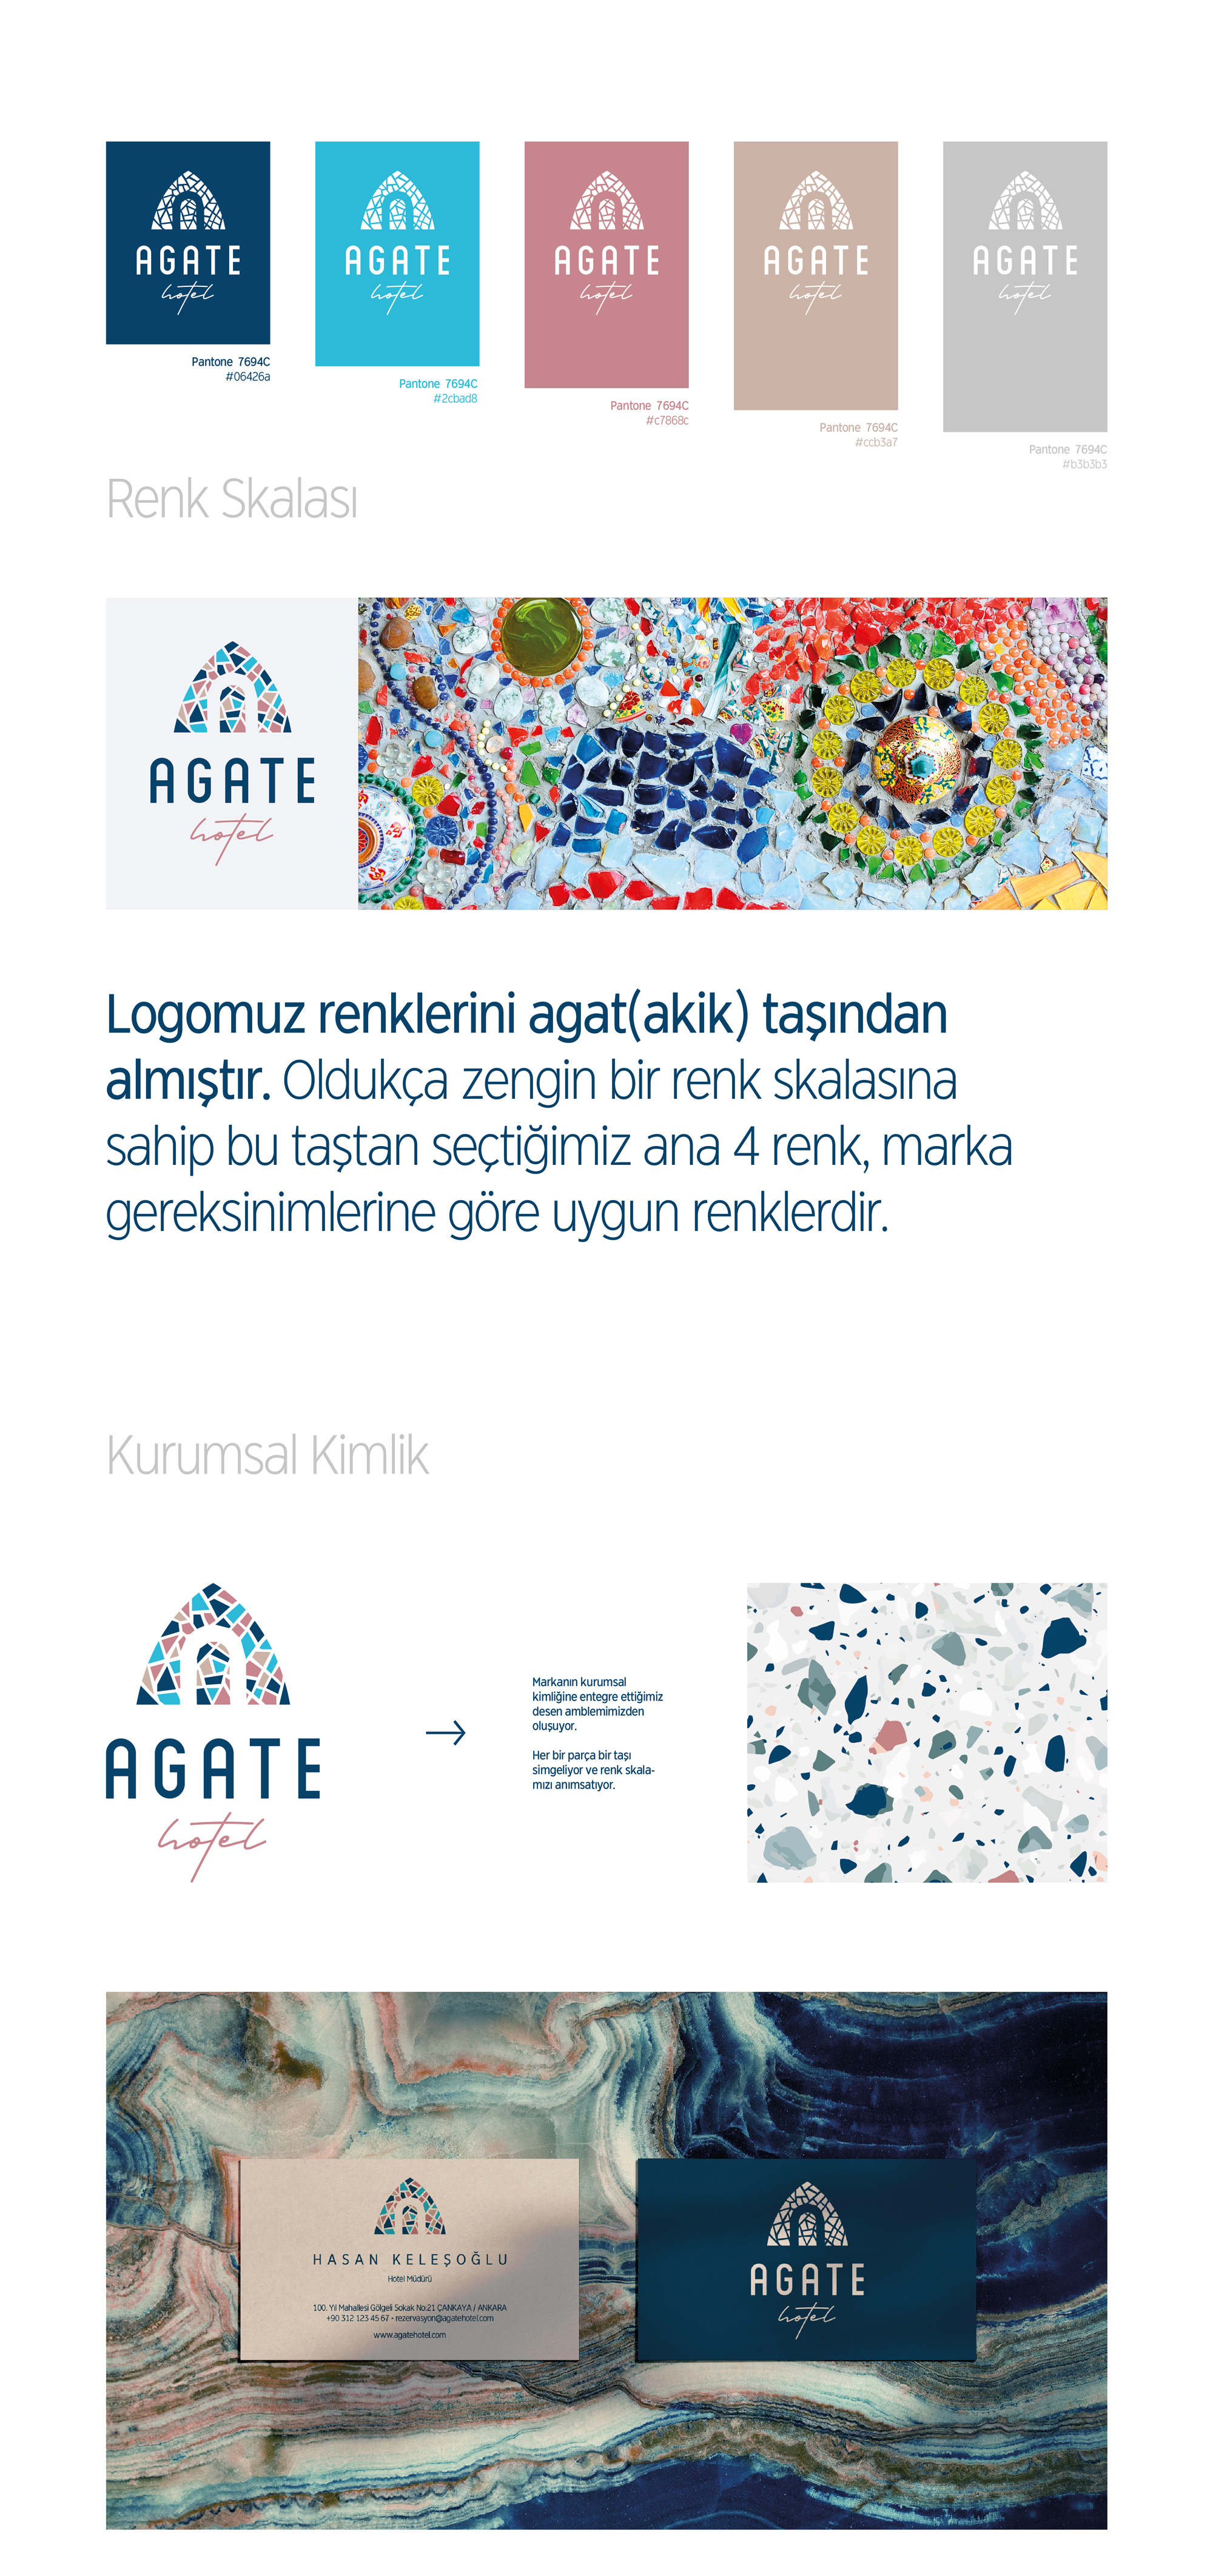 Ankara kurumsal kimlik tasarımı  Agate Hotel